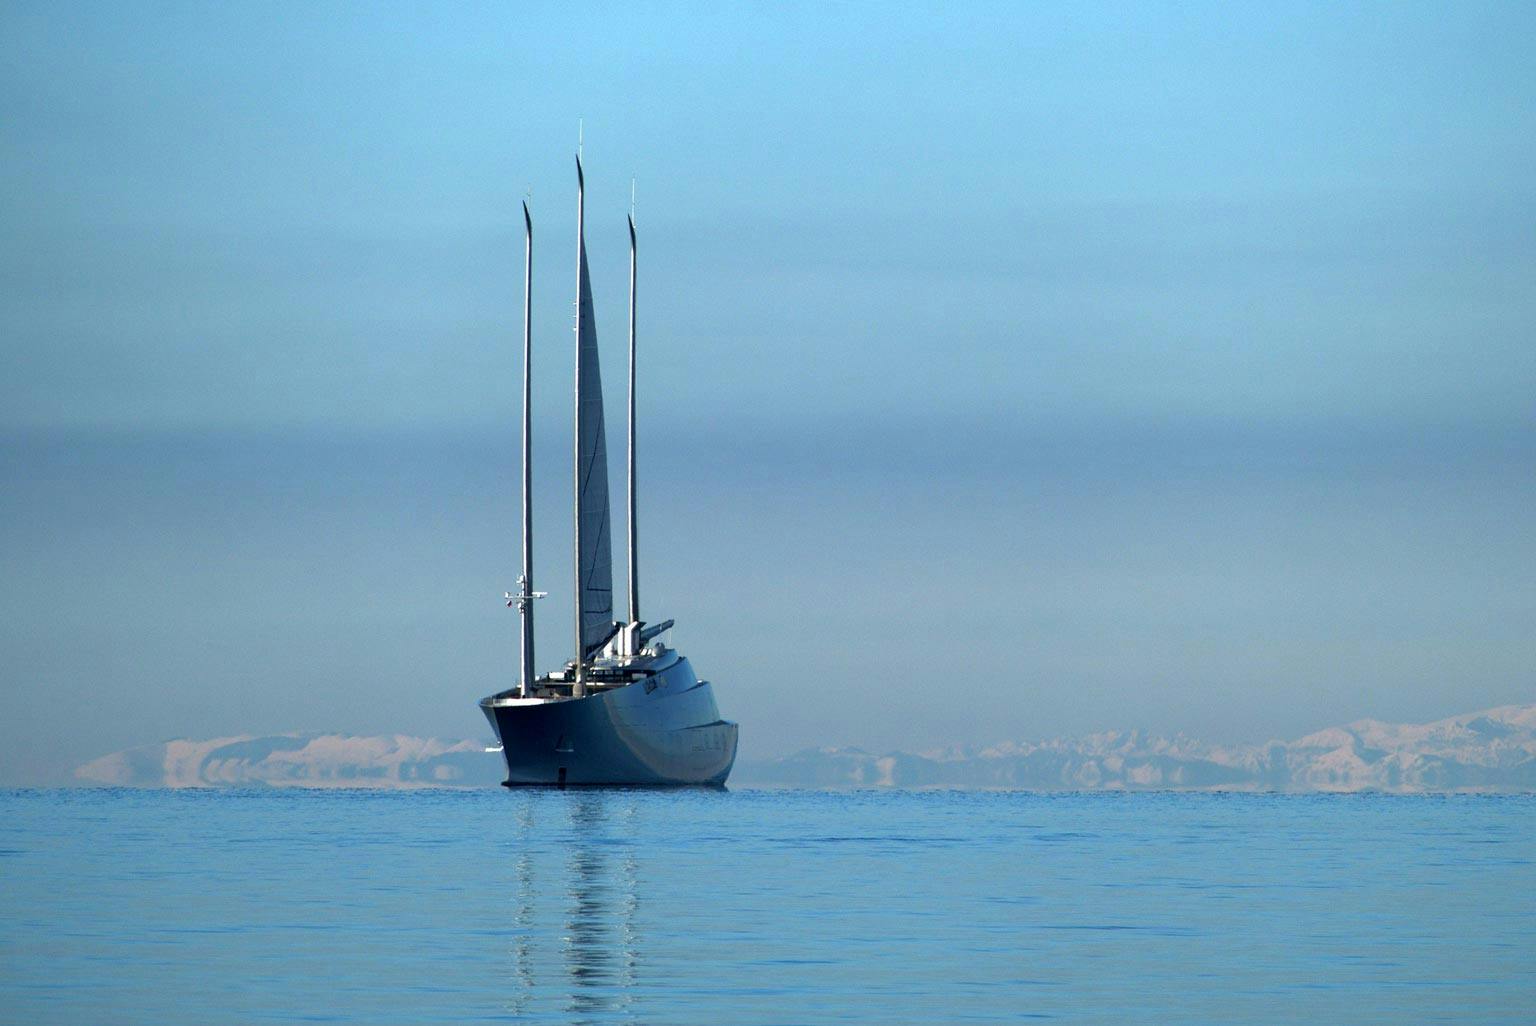 Bild der Sailing Yacht A auf dem Meer